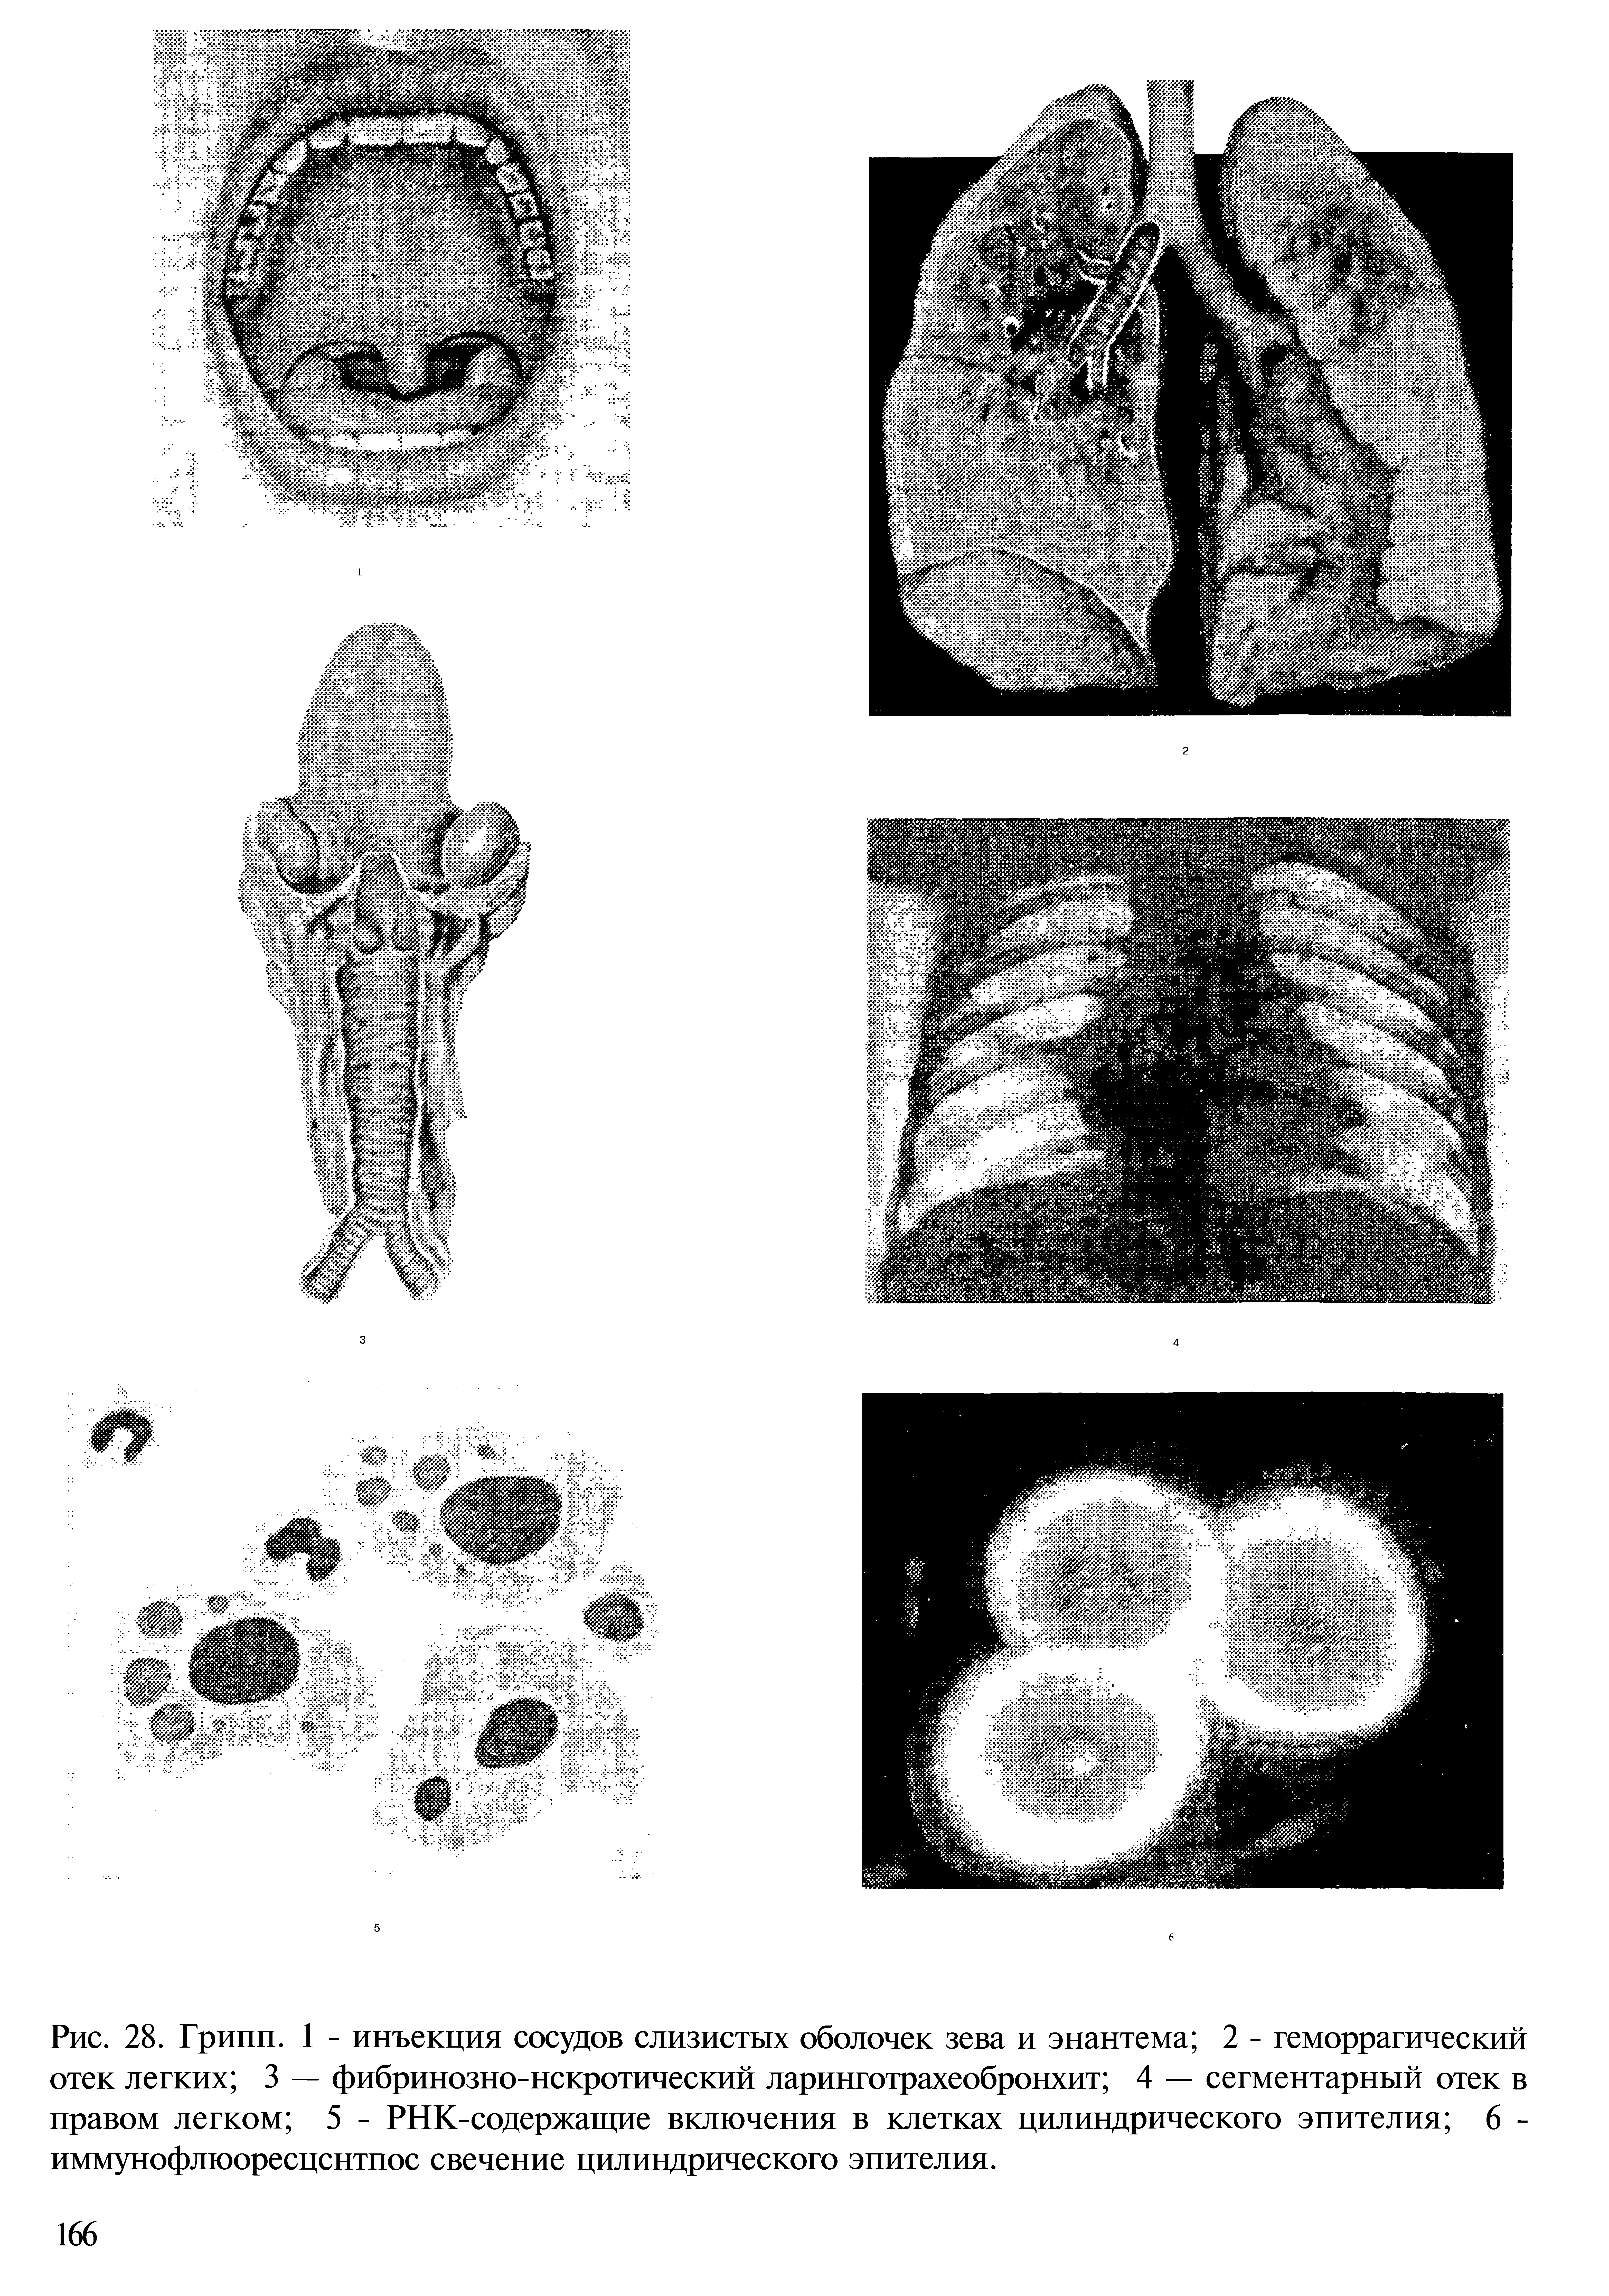 Рис. 28. Грипп. 1 - инъекция сосудов слизистых оболочек зева и энантема 2 - геморрагический отек легких 3 — фибринозно-некротический ларинготрахеобронхит 4 — сегментарный отек в правом легком 5 - РНК-содержащие включения в клетках цилиндрического эпителия 6 -иммунофлюоресцснтпос свечение цилиндрического эпителия.